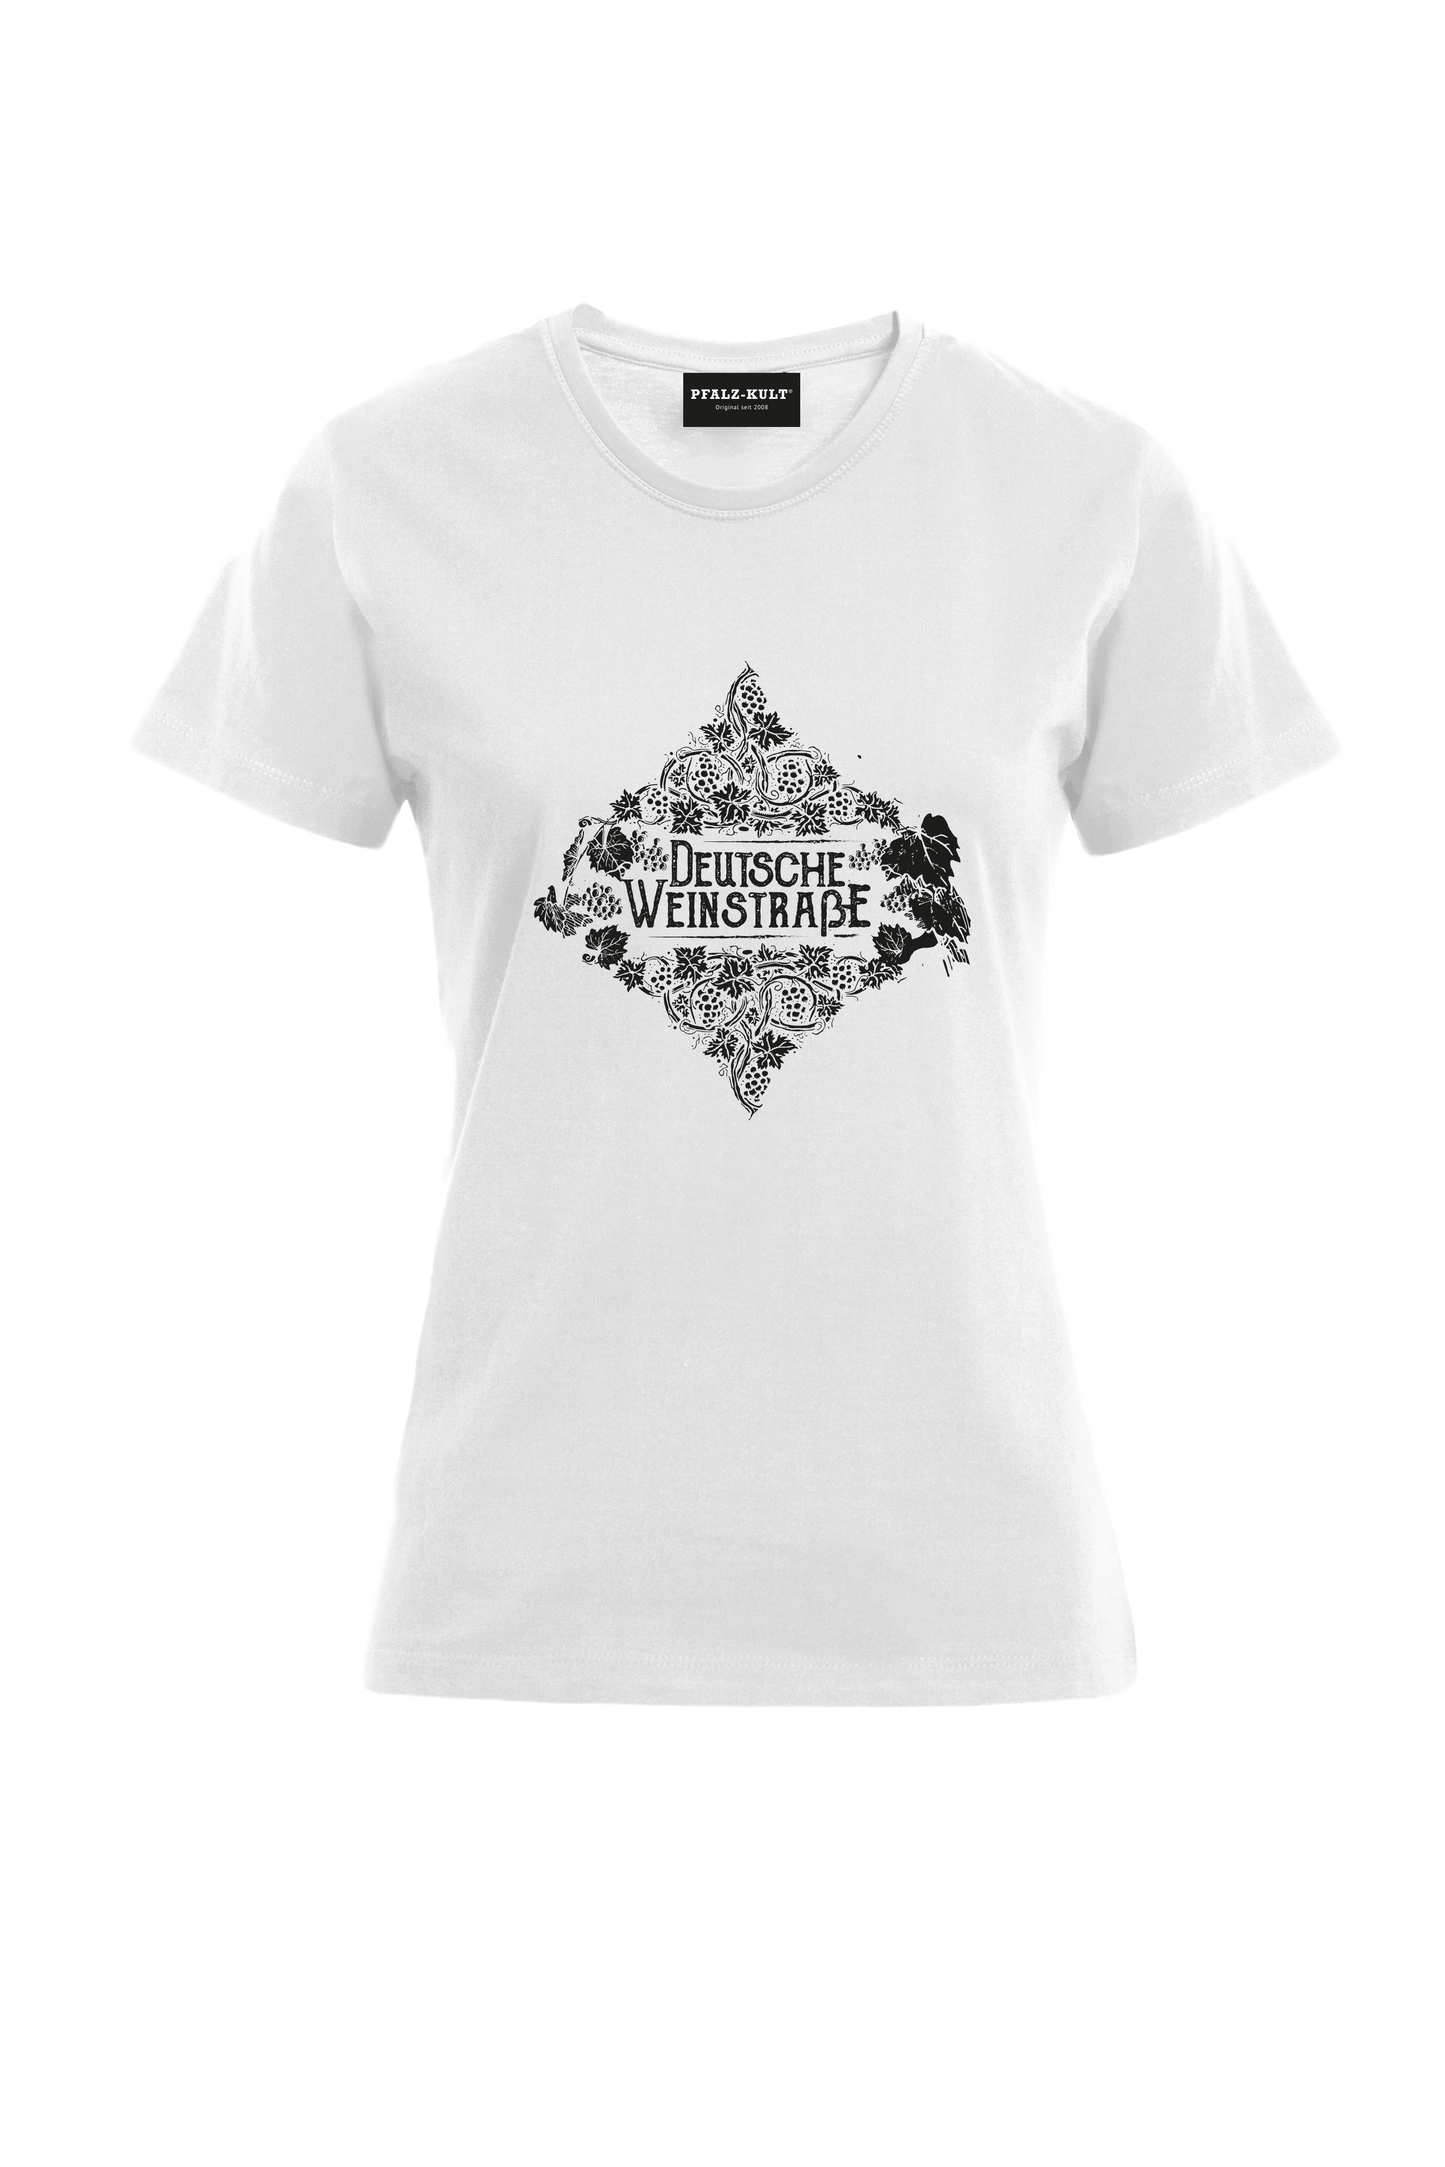 Weißes Pfalz-Kult Damen Shirt mit dem Aufdruck "Deutsche Weinstrasse" .  Das ideale Geschenk für jedes Pfalzkind vom Textildruck Spezialisten aus Bad Dürkheim.